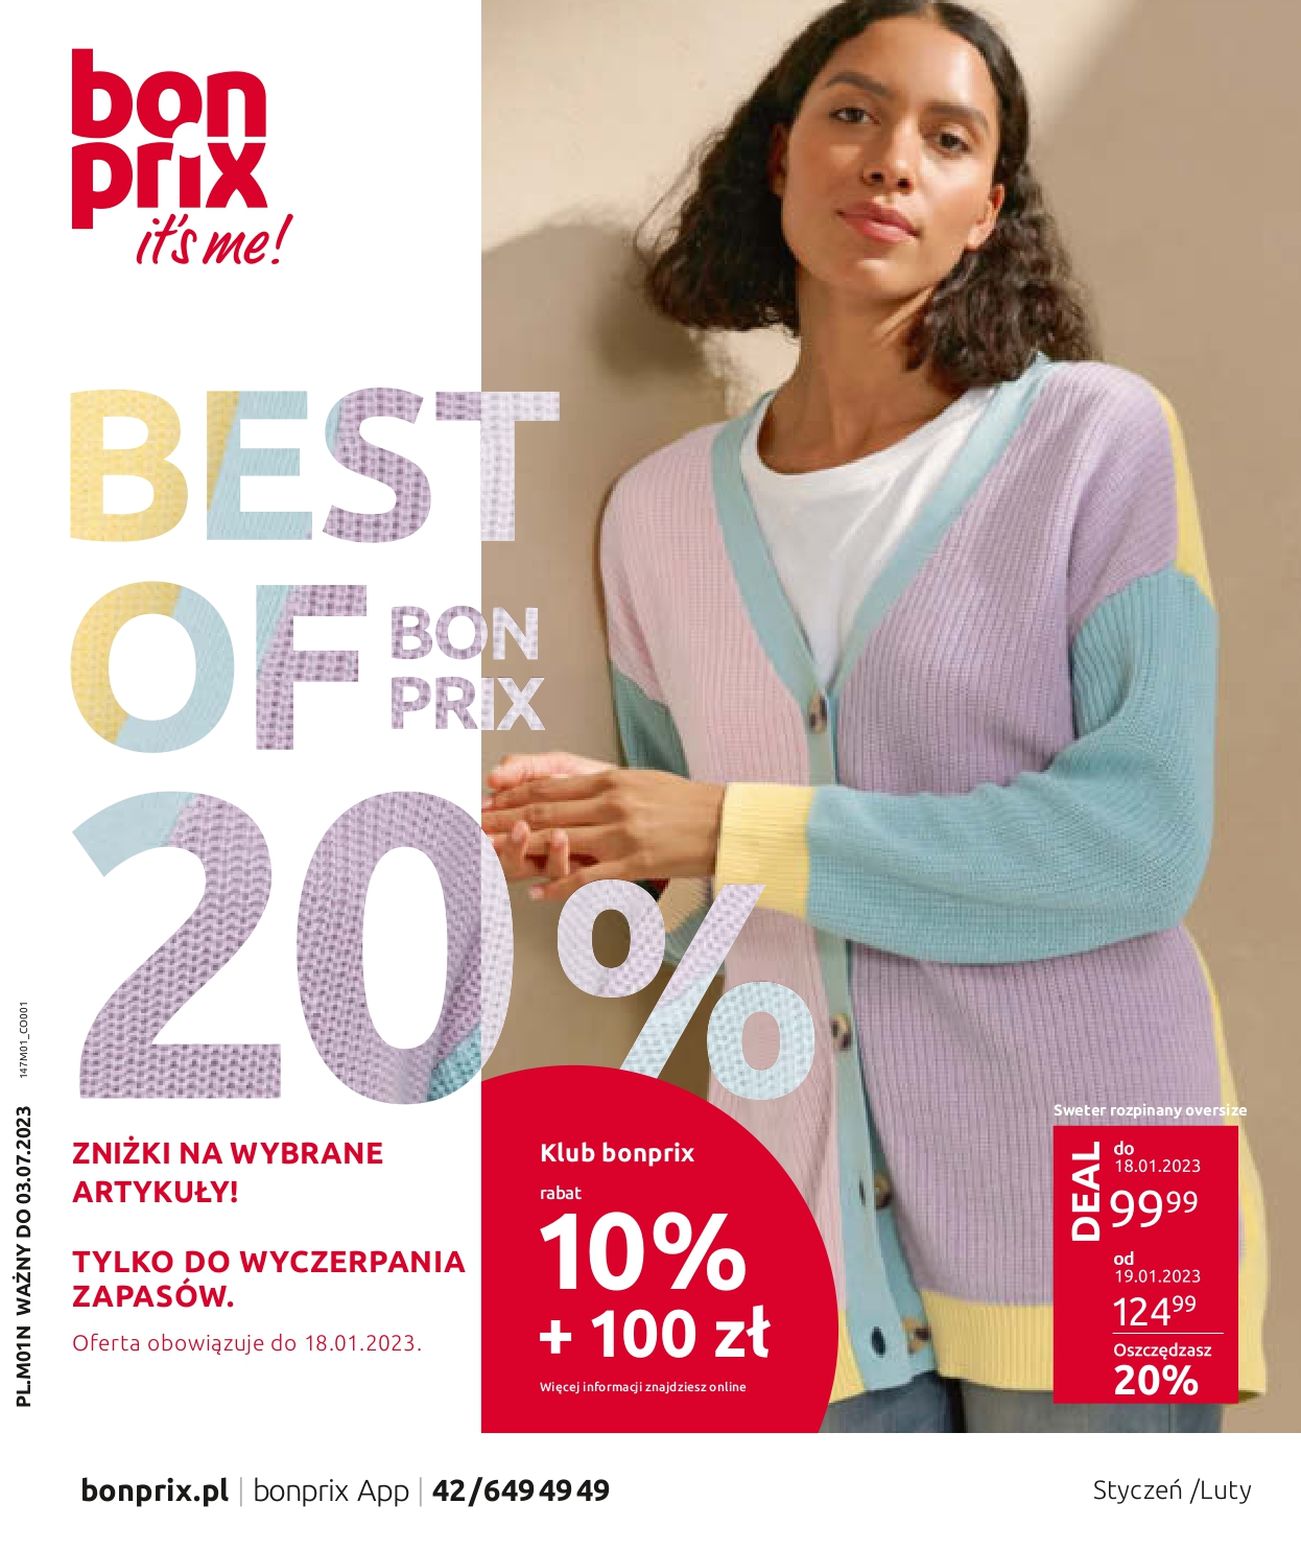 акційний каталог bonprix – BEST OF BONPRIX - Сторінка {{page}}